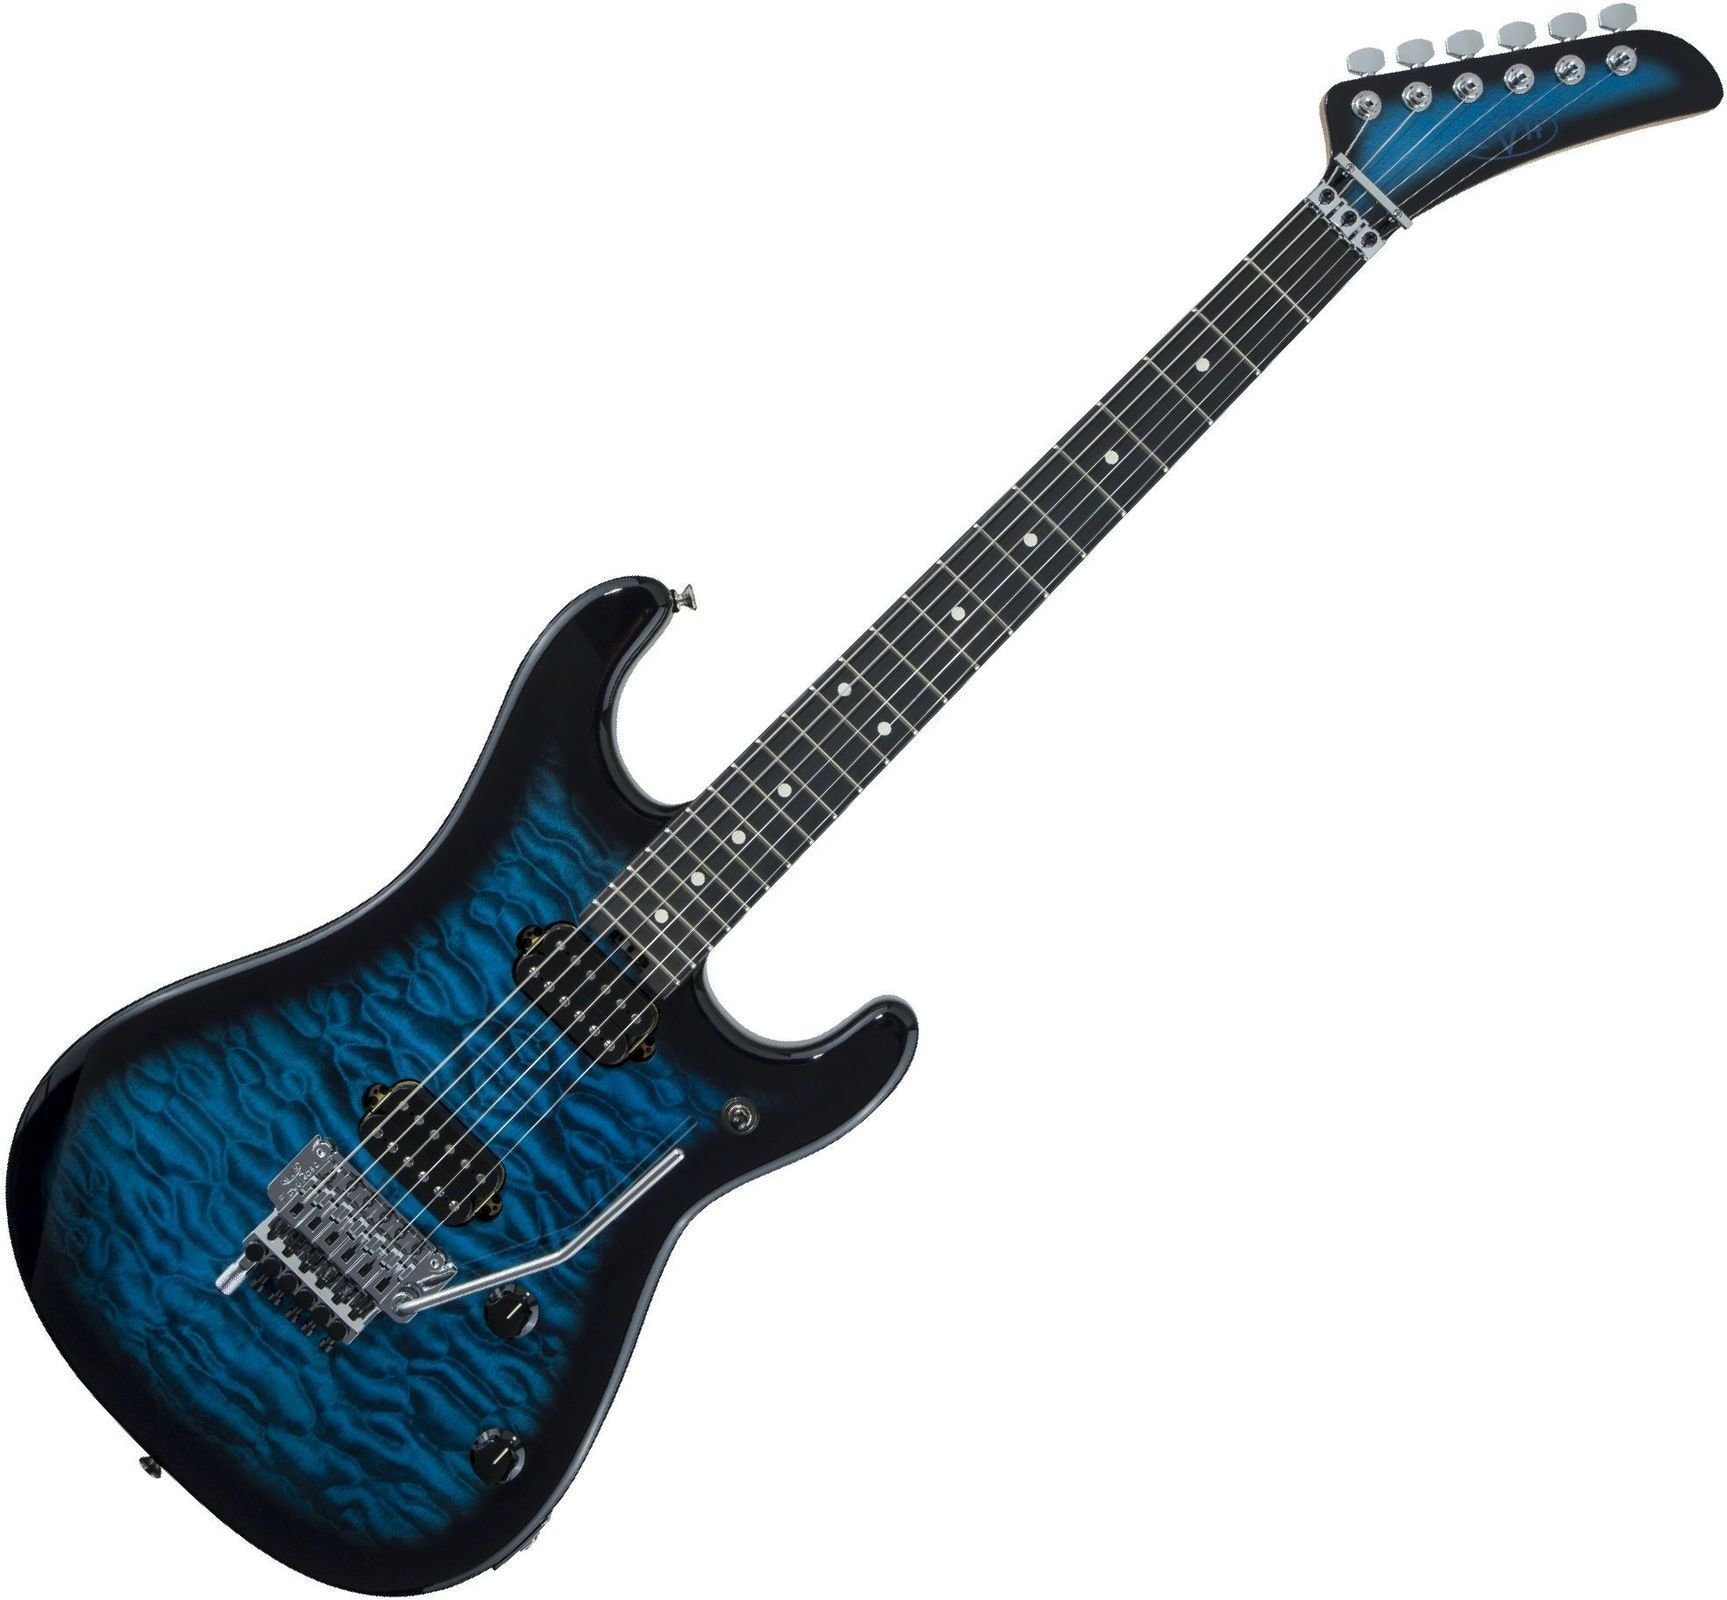 E-Gitarre EVH 5150 Series Deluxe Ebony Transparent Blue Burst